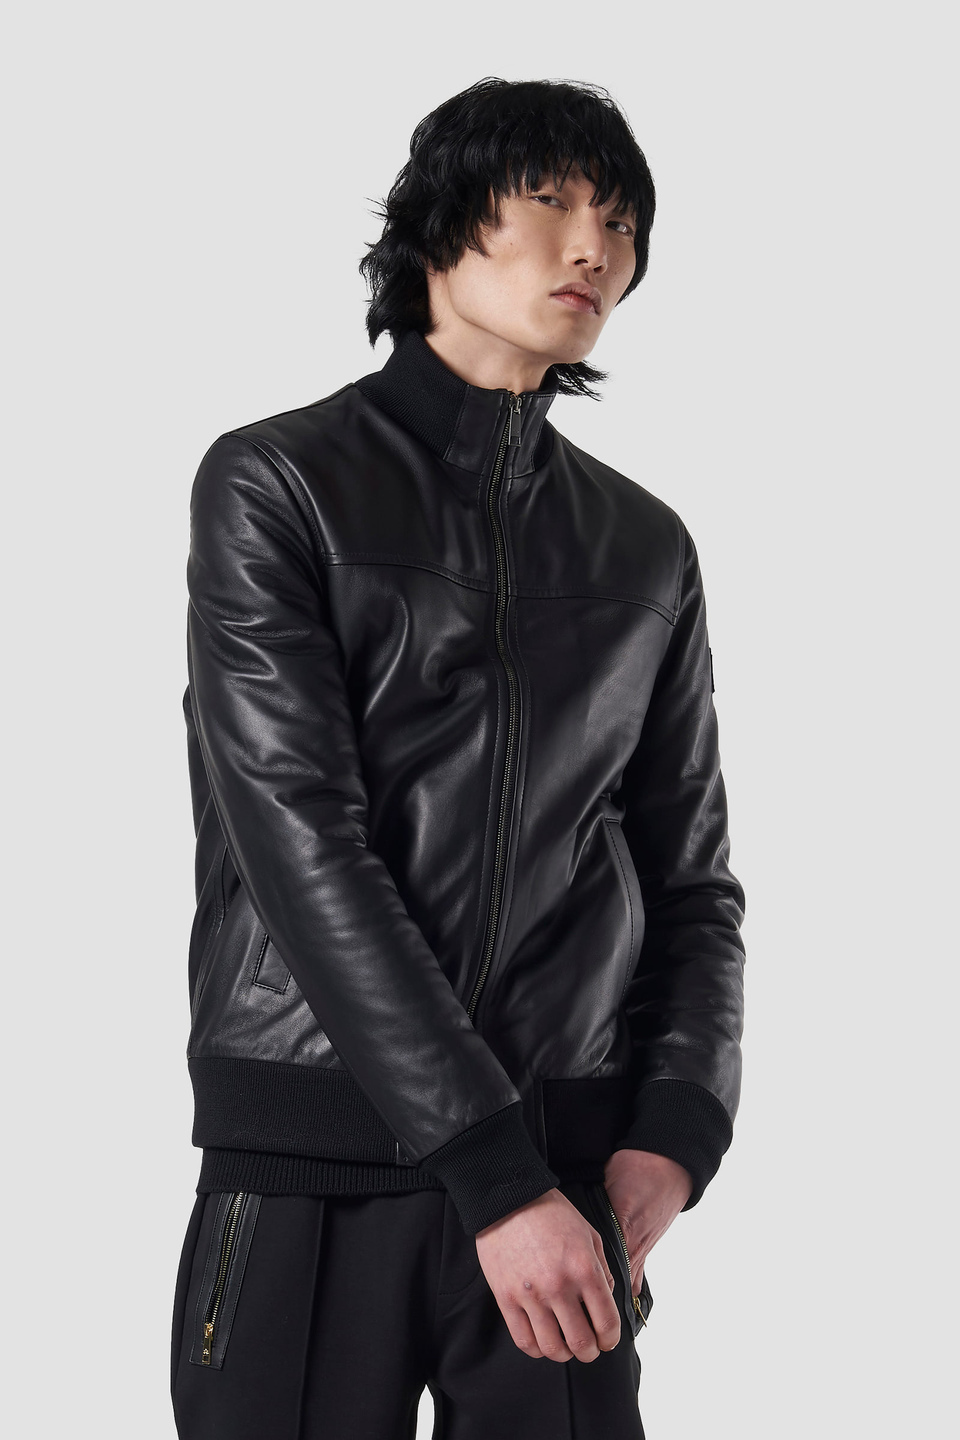 Insert-embellished leather jacket - La Martina - Official Online Shop